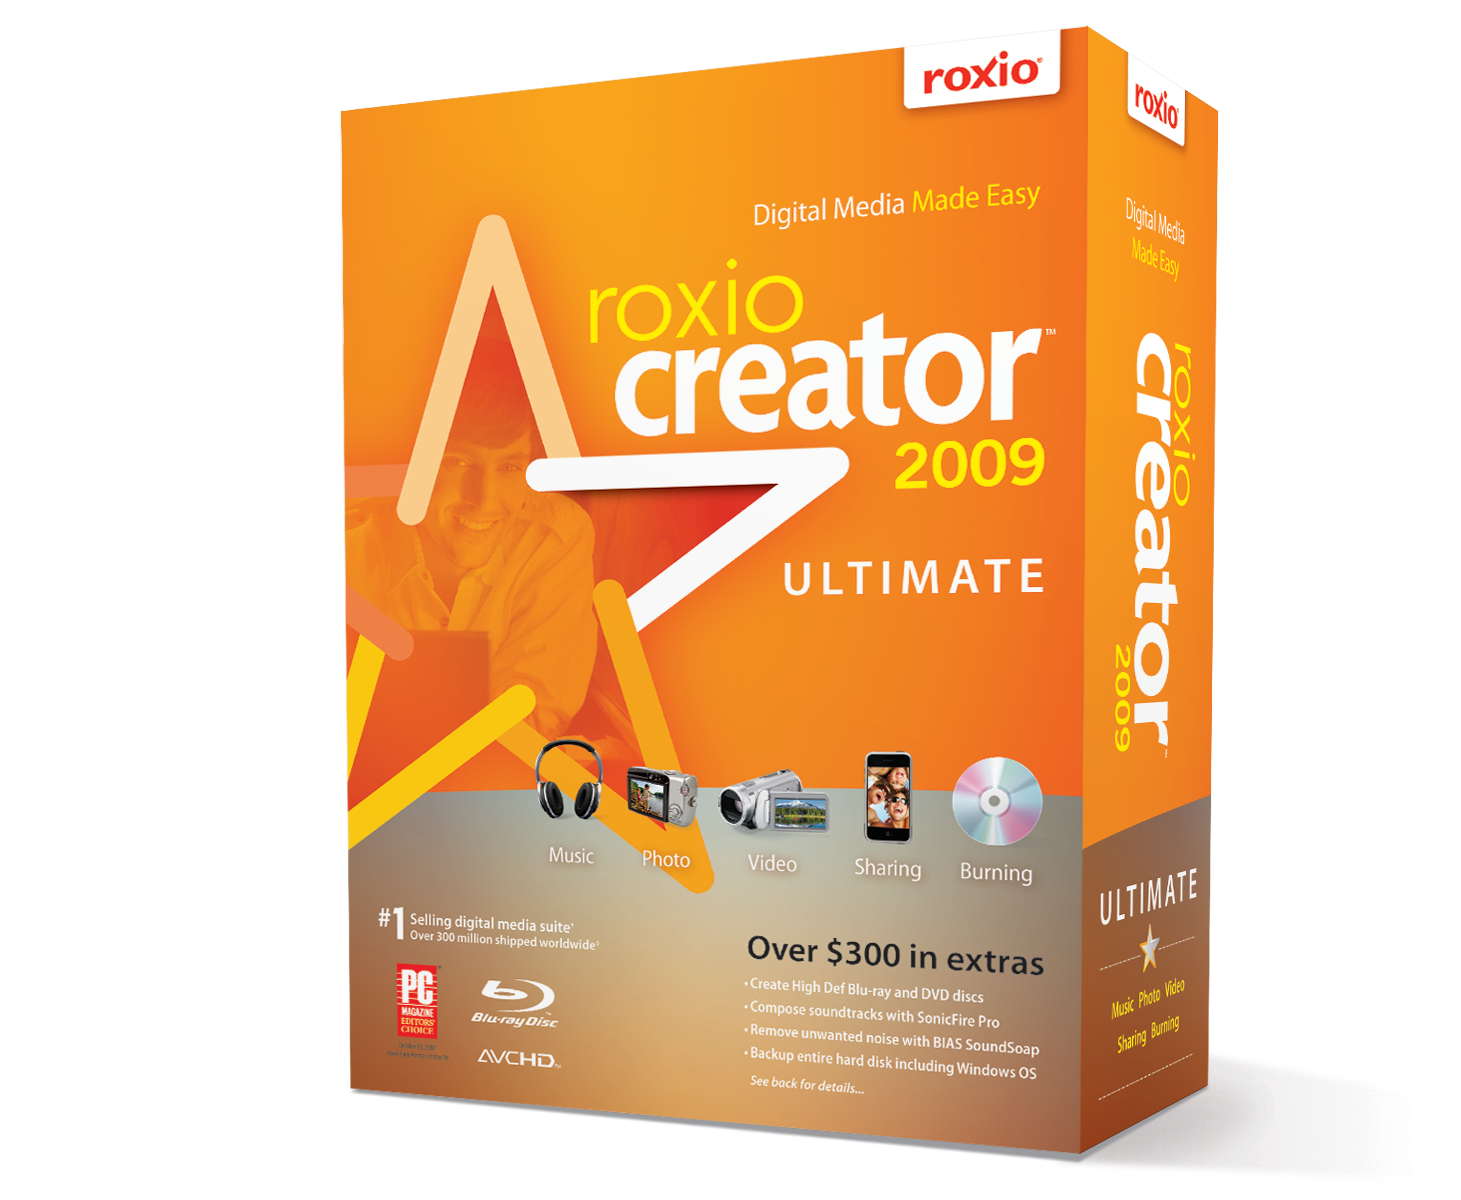 roxio easy media creator 10 suite free download